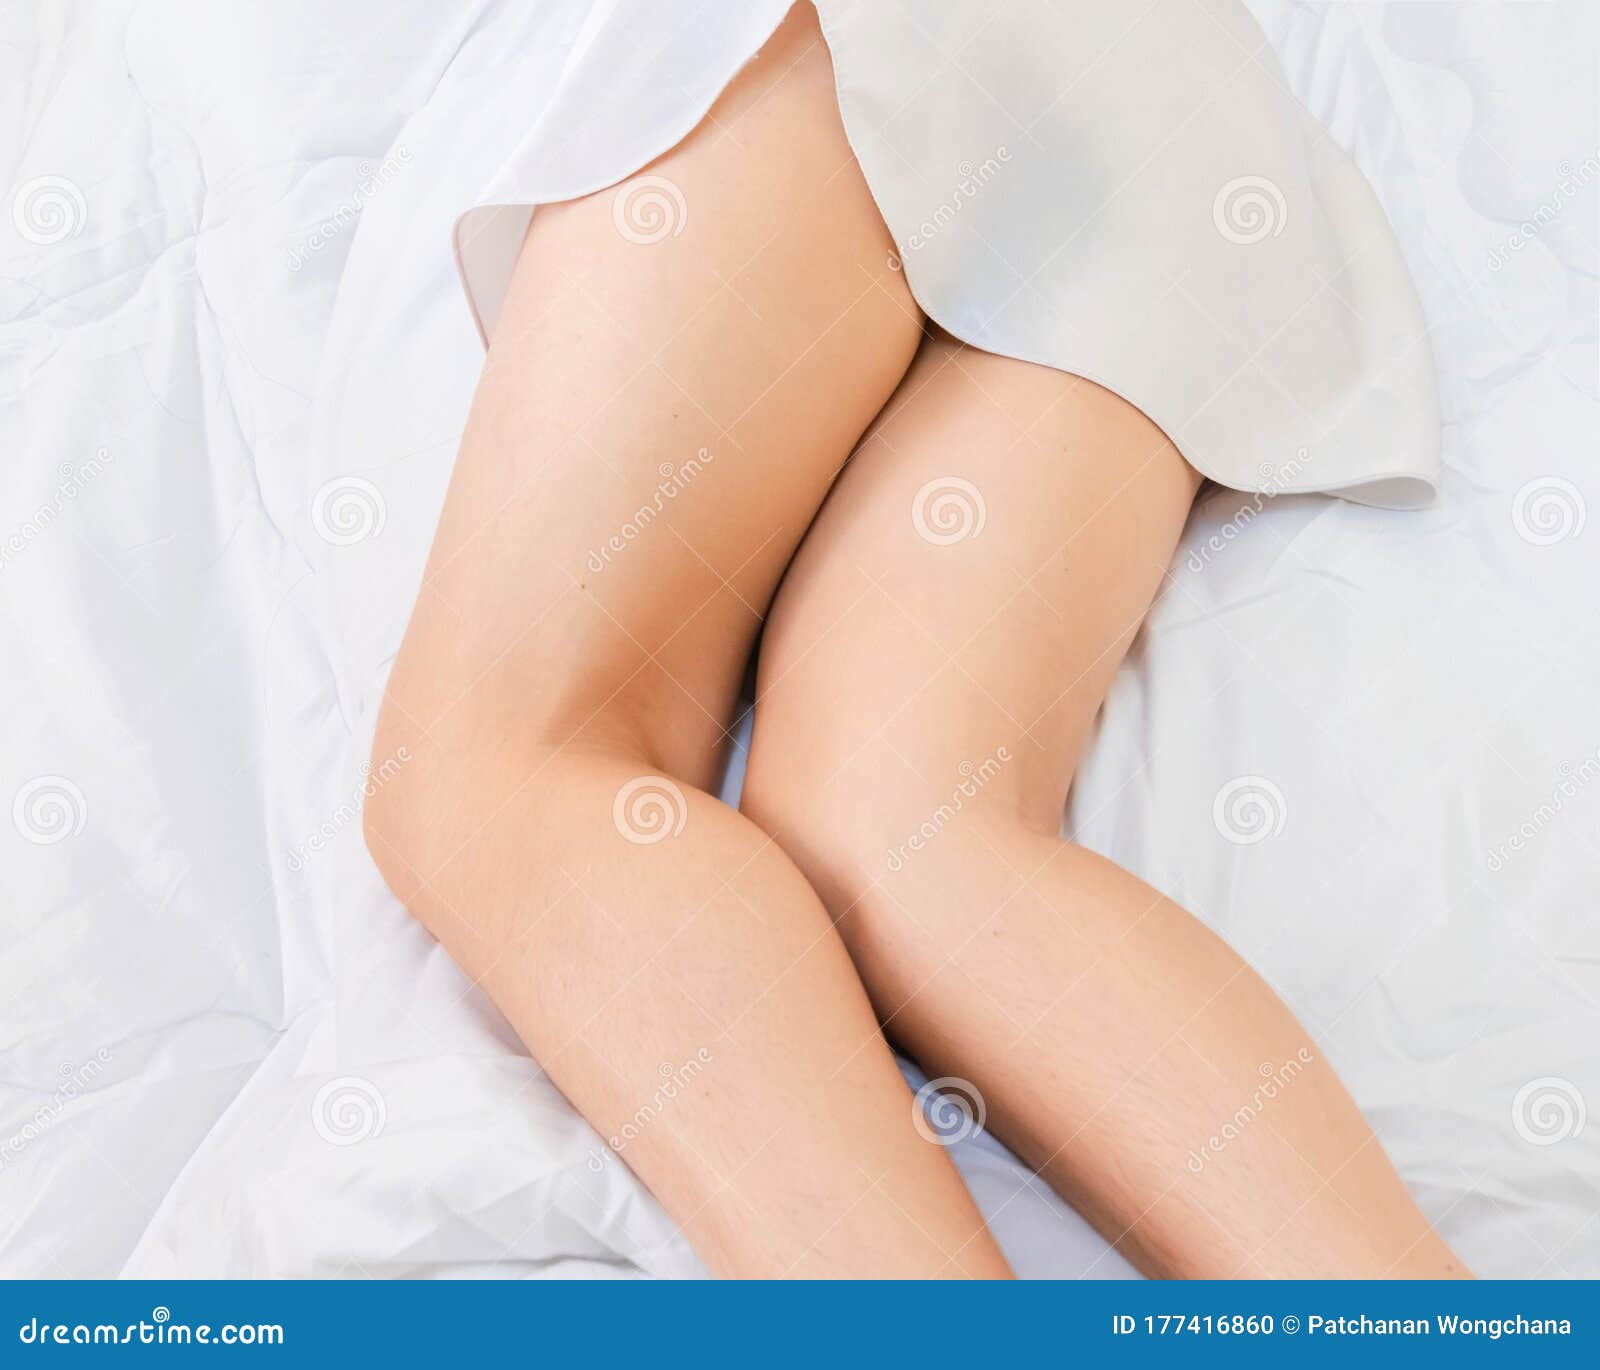 Lower Part of Female Body Wearing White Sleepwear Lying on Bed